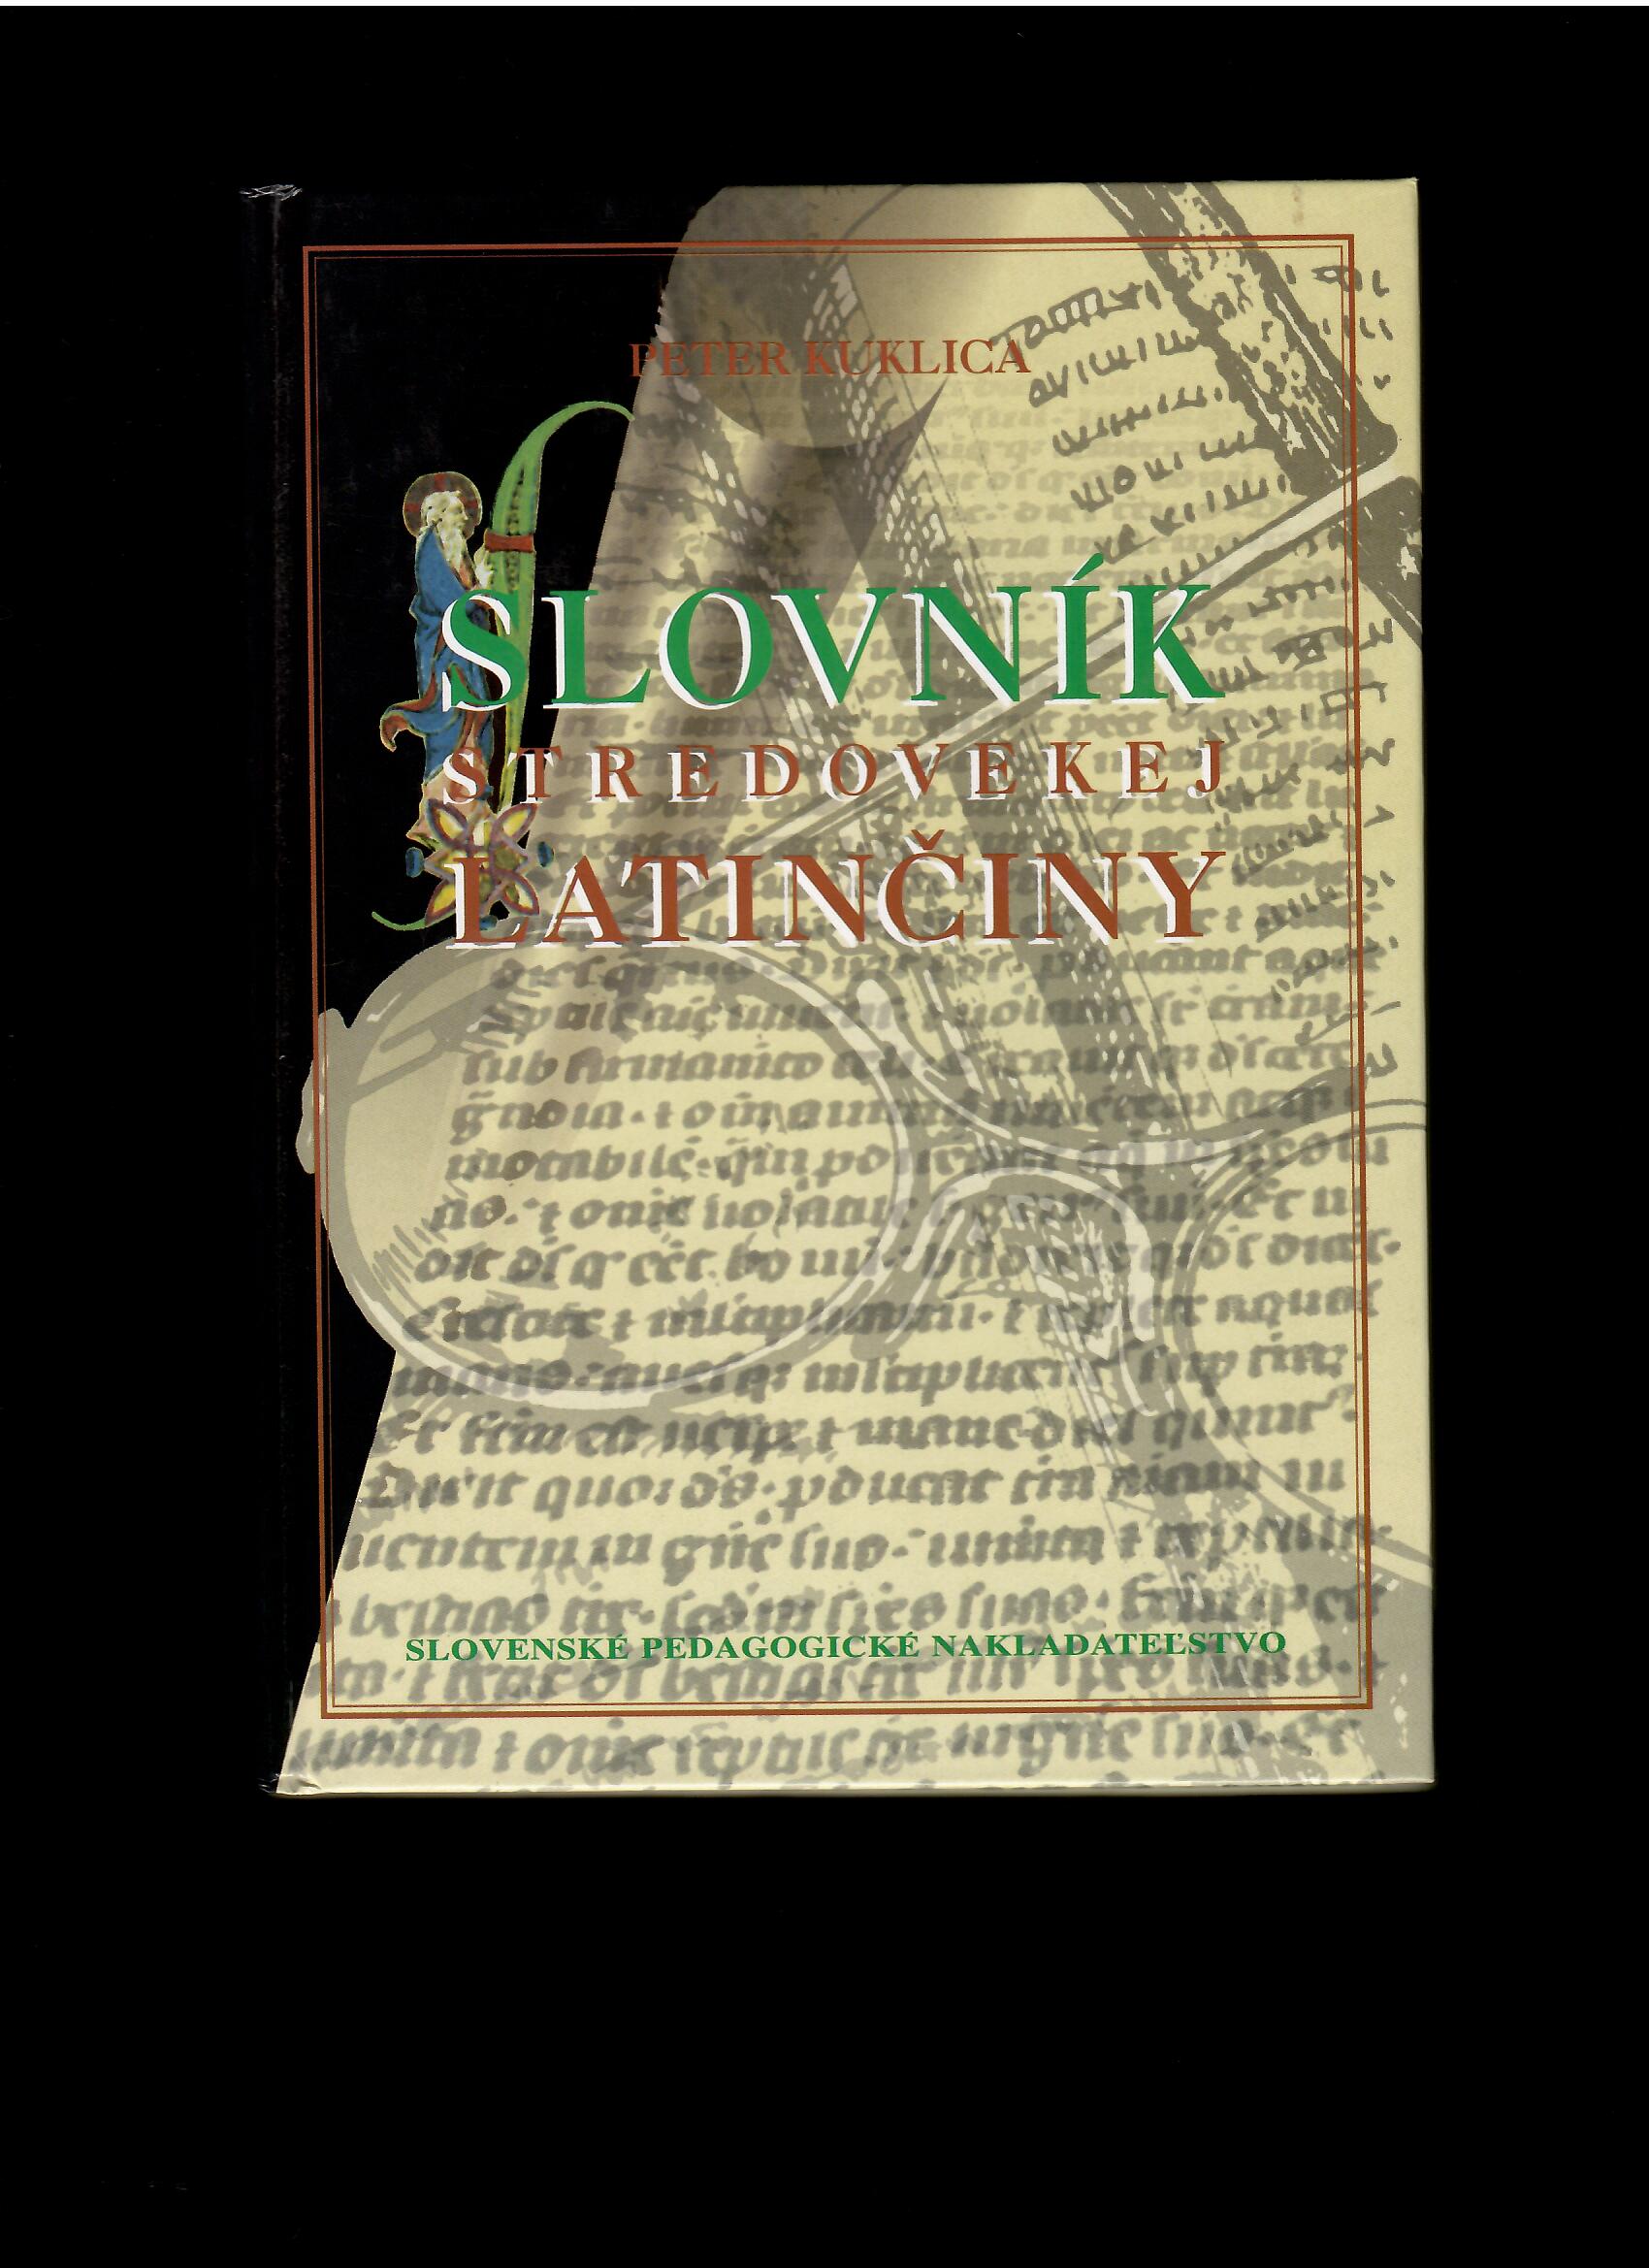 Peter Kuklica: Slovník stredovekej latinčiny